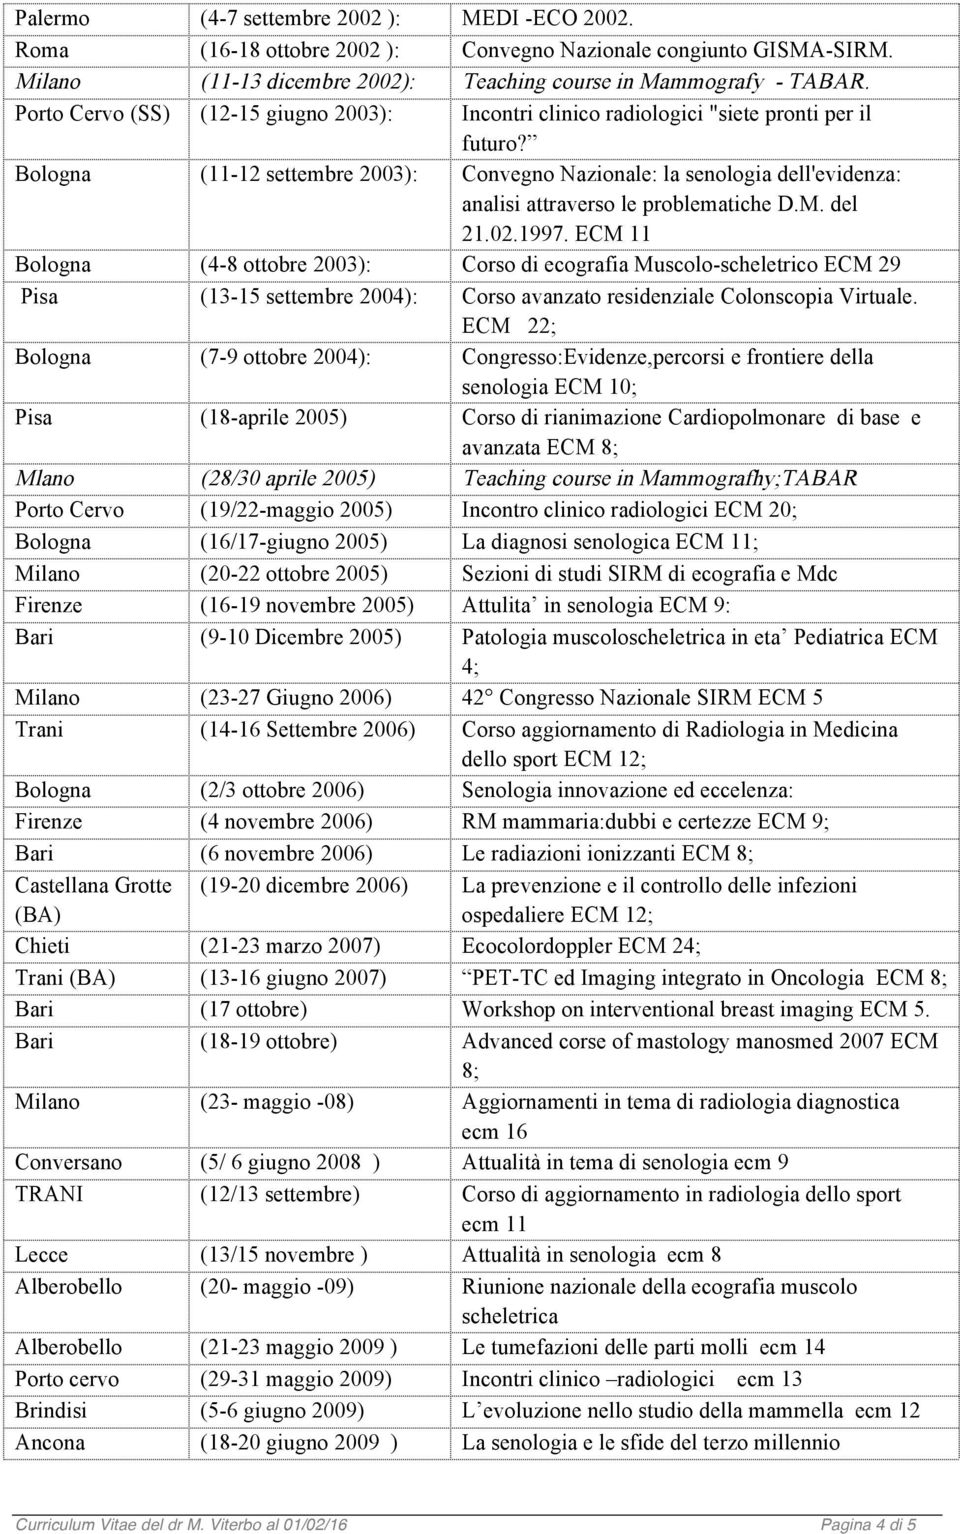 Bologna (11-12 settembre 2003): Convegno Nazionale: la senologia dell'evidenza: analisi attraverso le problematiche D.M. del 21.02.1997.